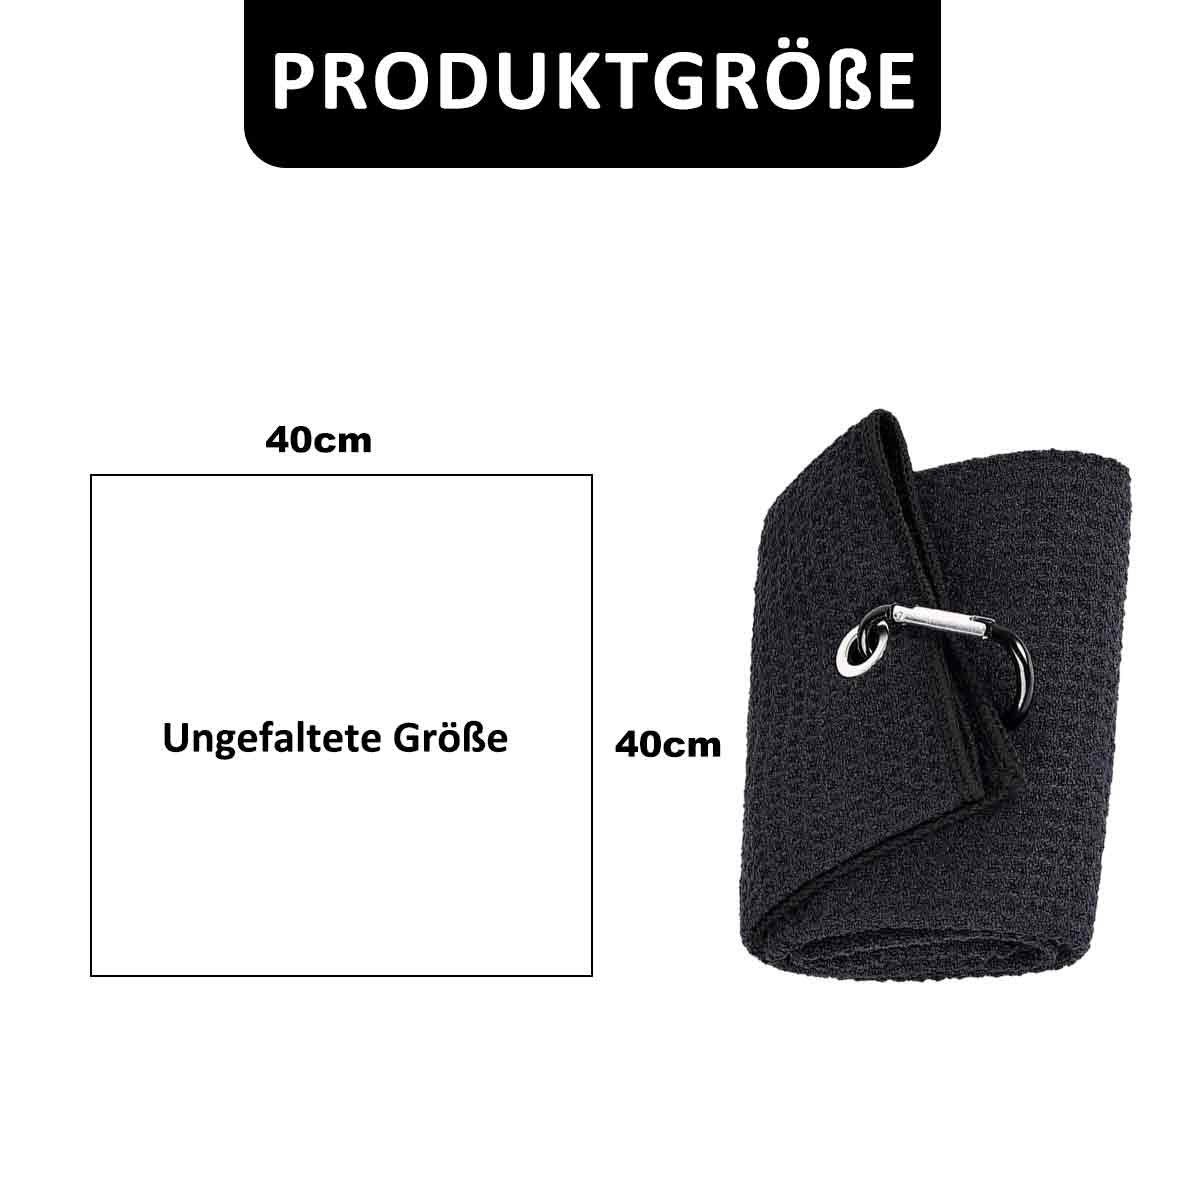 Jormftte Handtücher Handtücher Fold Handtuch Sporthandtuch Golfhandtuch Microfaser Schwarz+Grün Golf